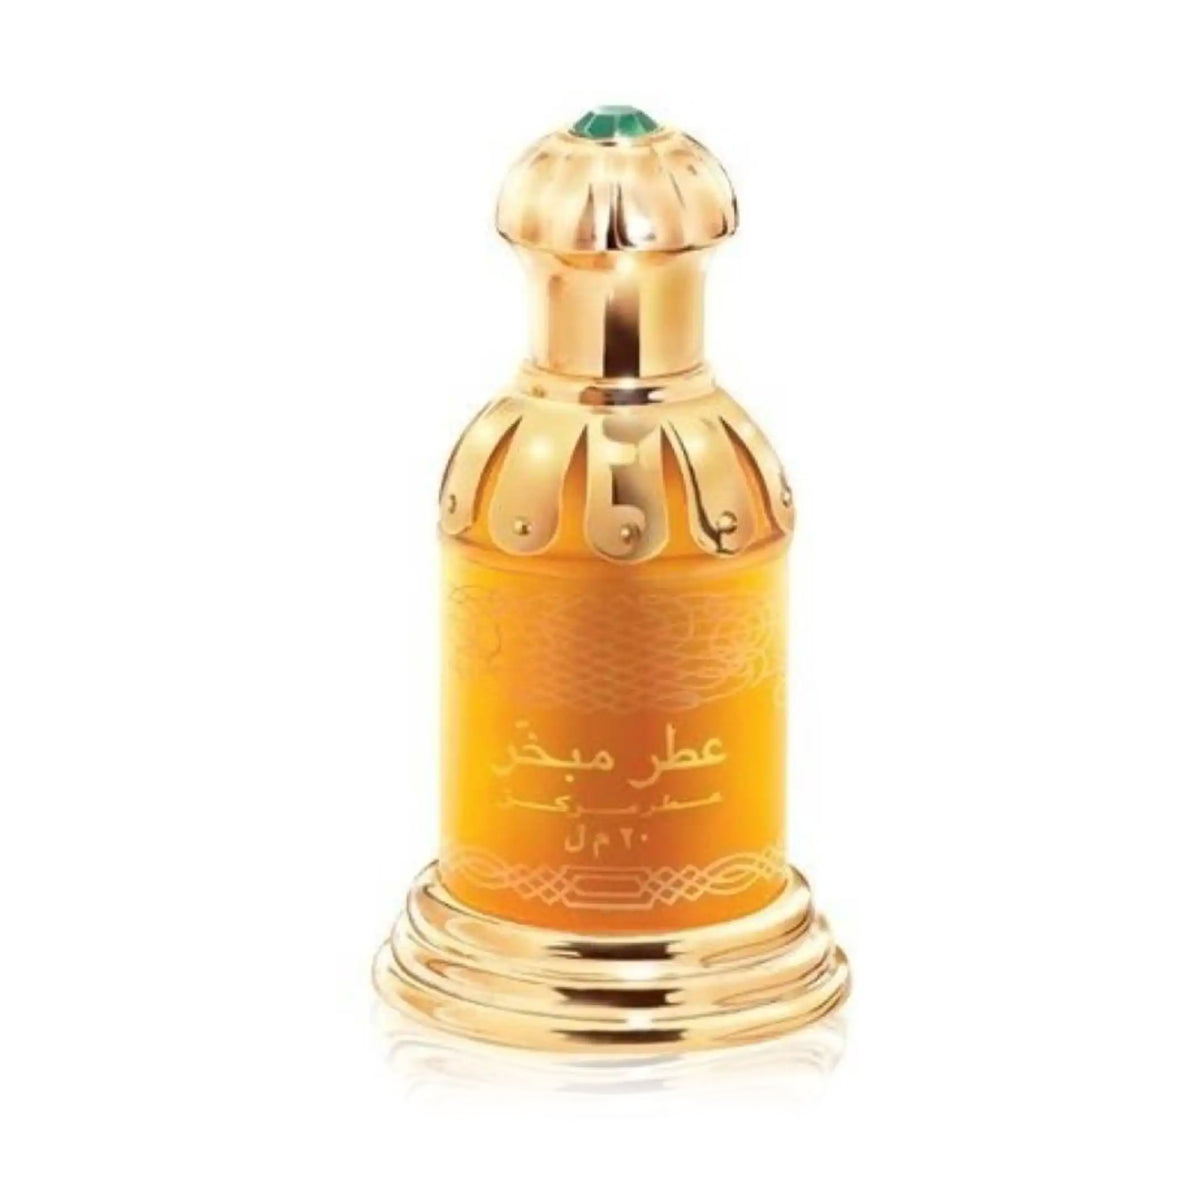 Rasasi Attar Mubakhar Concentrated Perfume Oil, Attar 20ml - samawa perfumes 